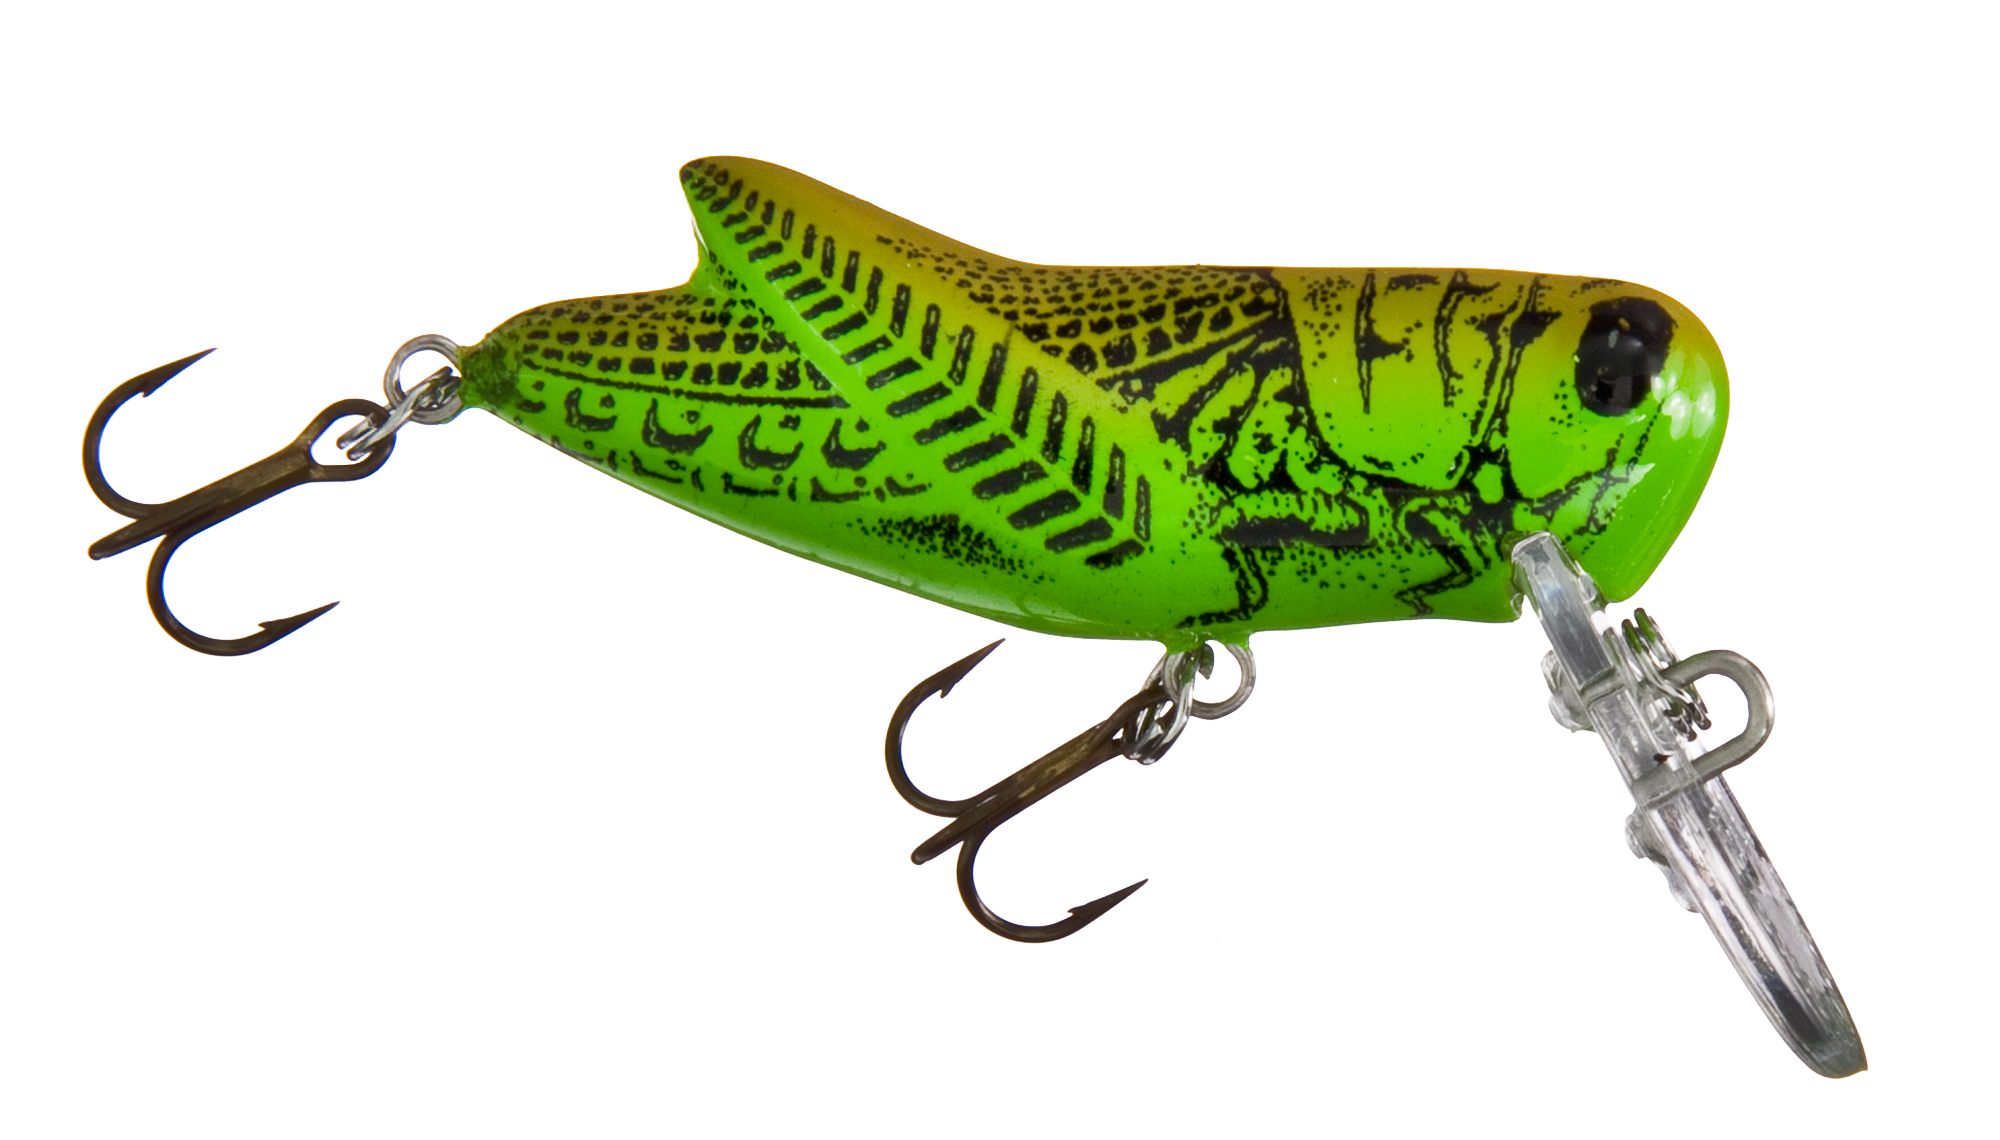 Rebel Lures F7397 Crickhopper Fishing Lure - Green Grasshopper - 1